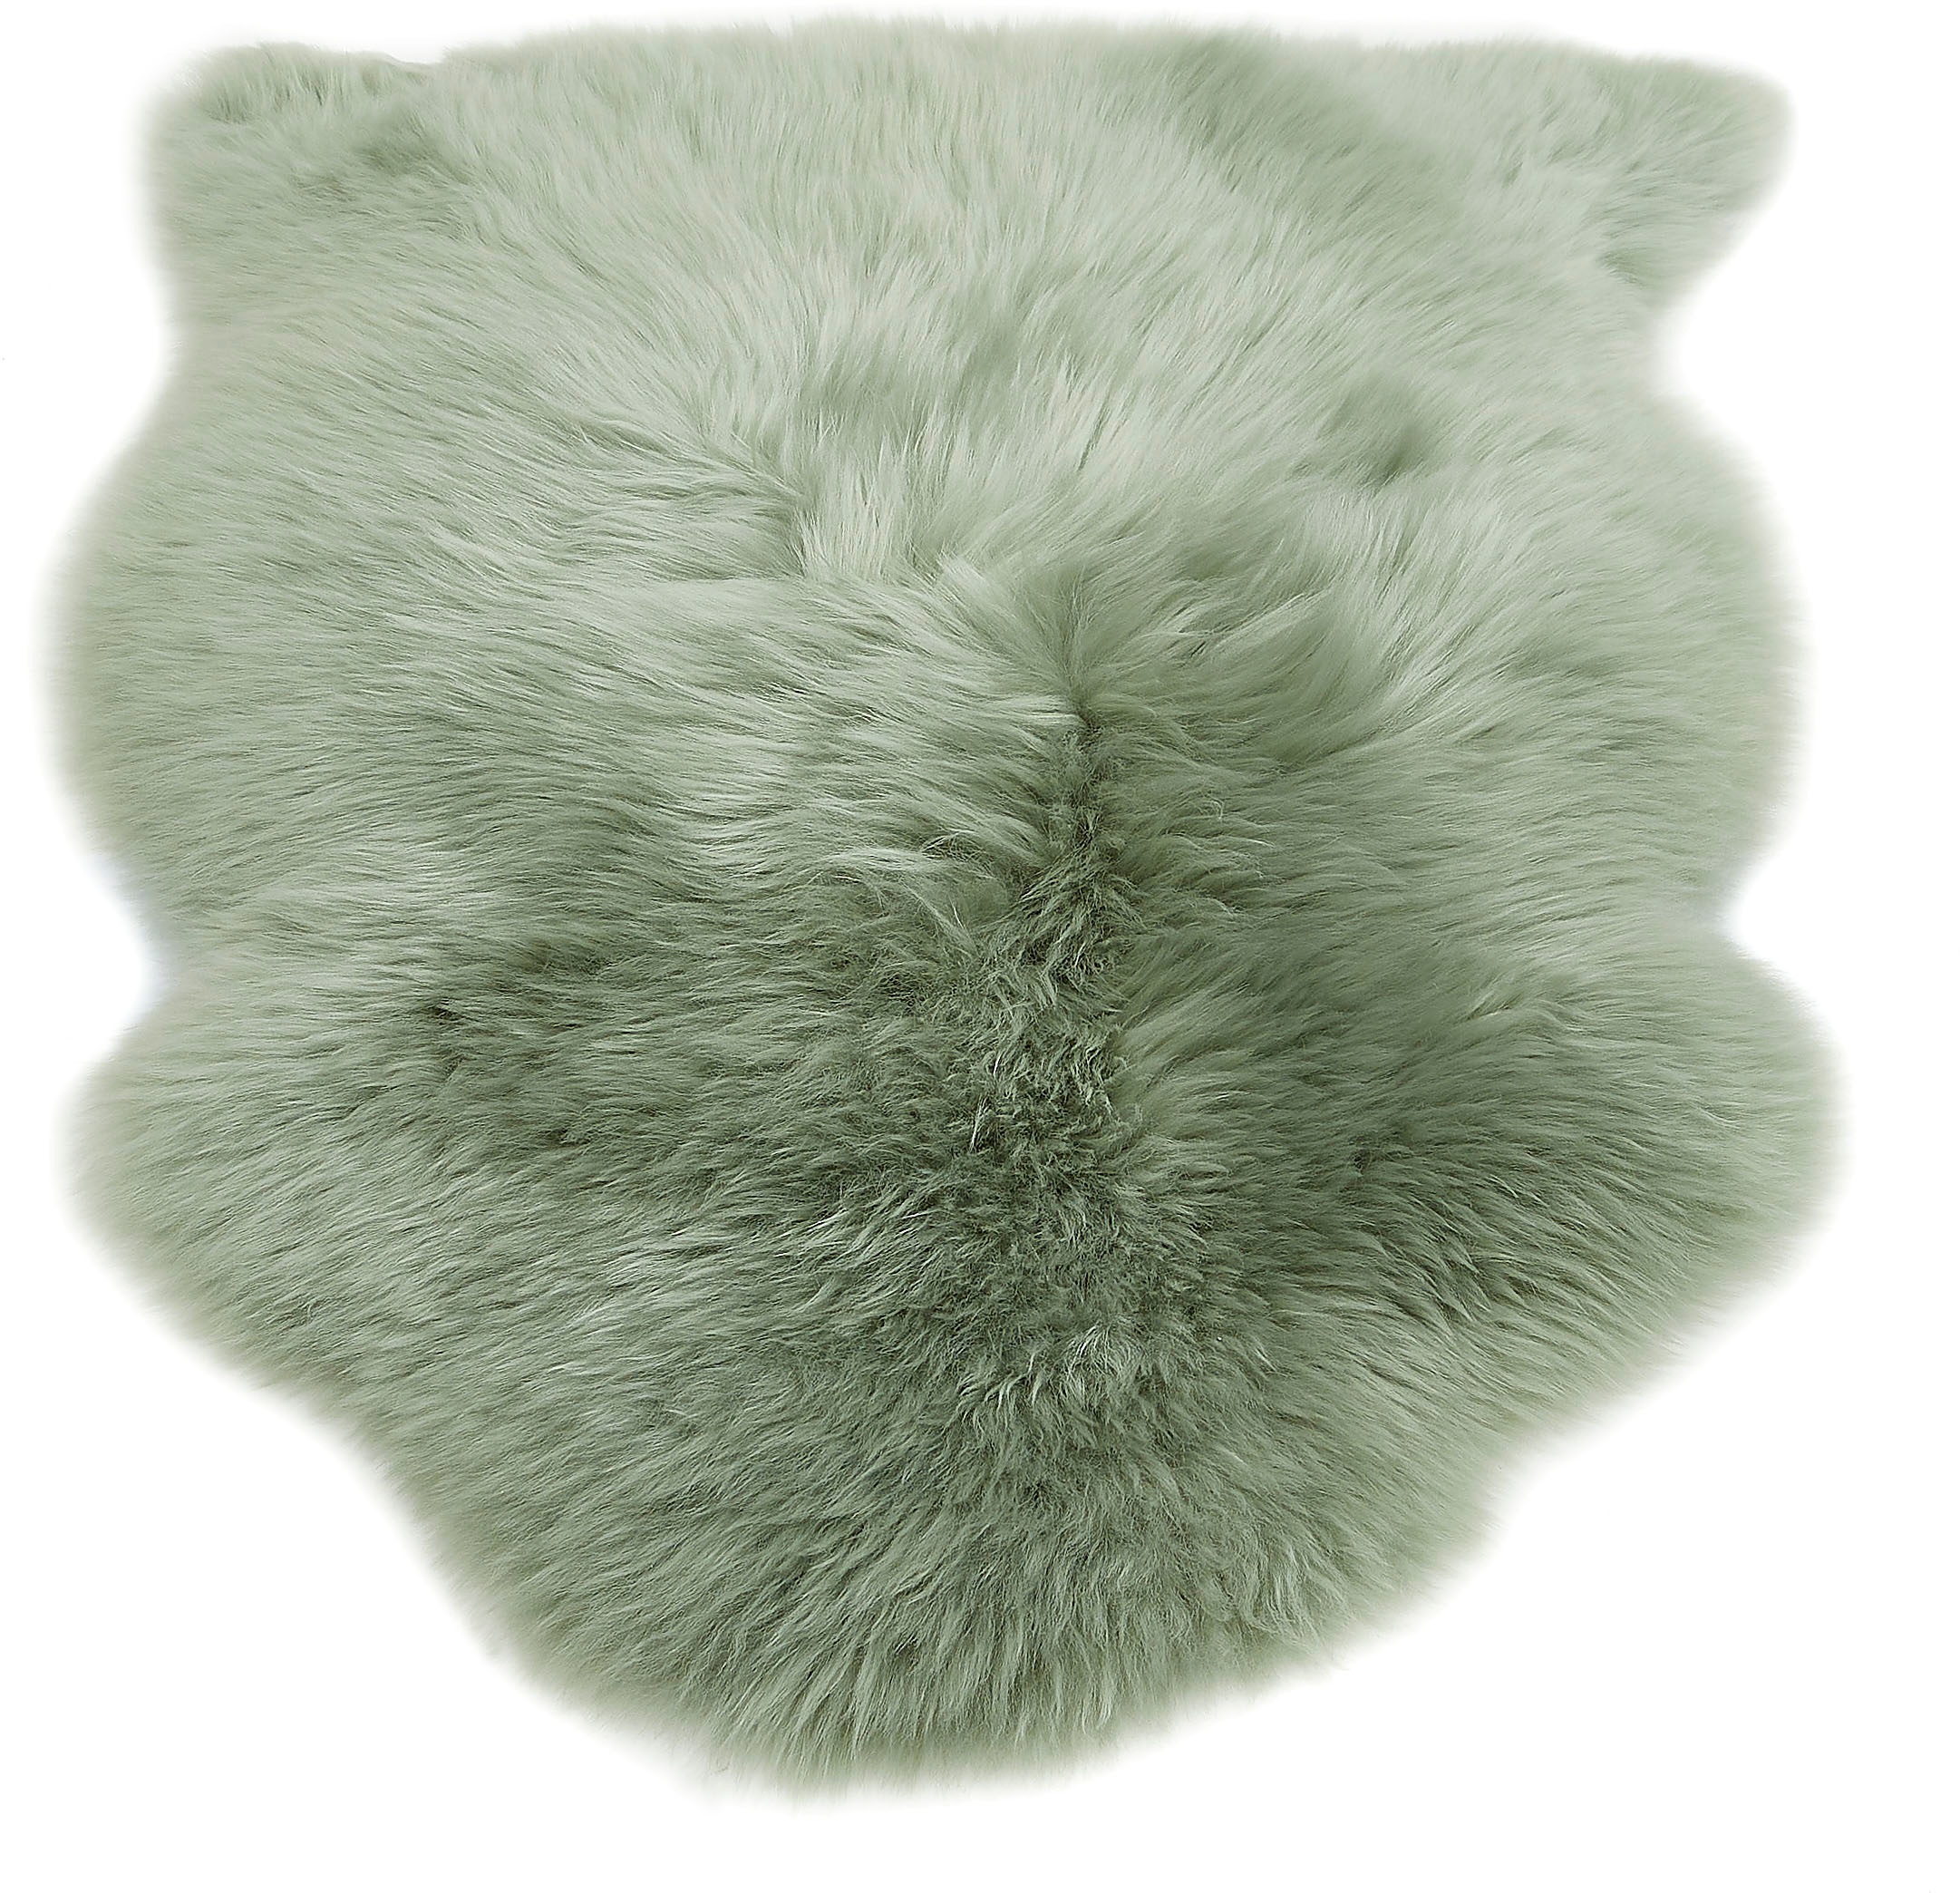 LUXOR living Fellteppich »Namika«, fellförmig, echtes Lammfell, weich & flauschig, große Farbauswahl, in 2 Größen